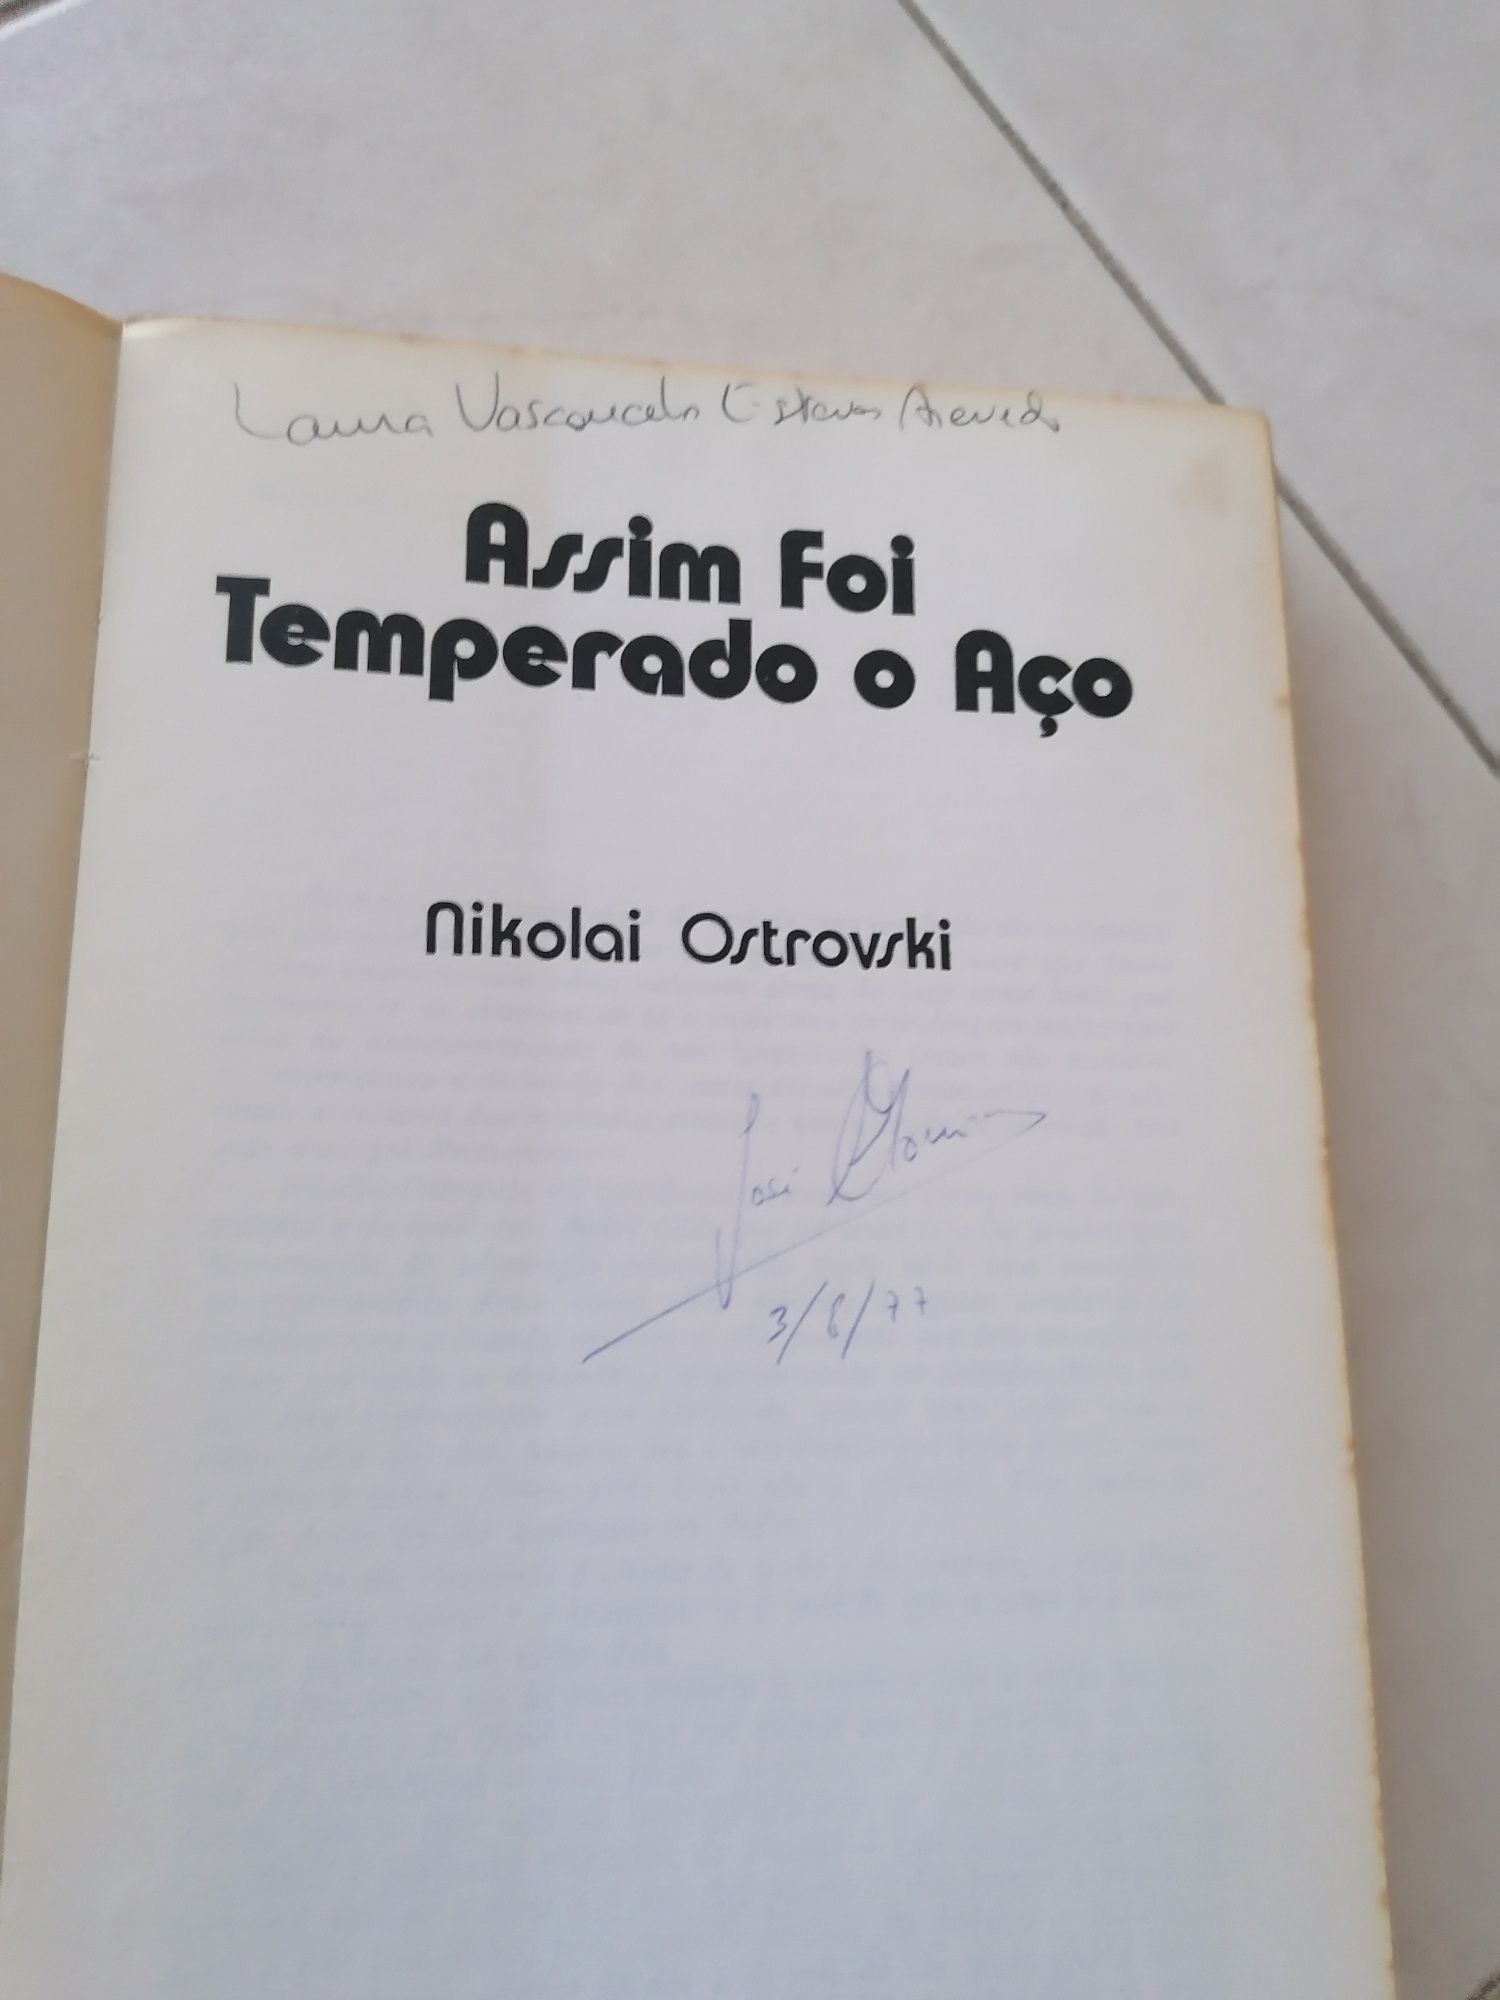 Livro "Assim foi temperado o aço" Nikolai Ostróvski